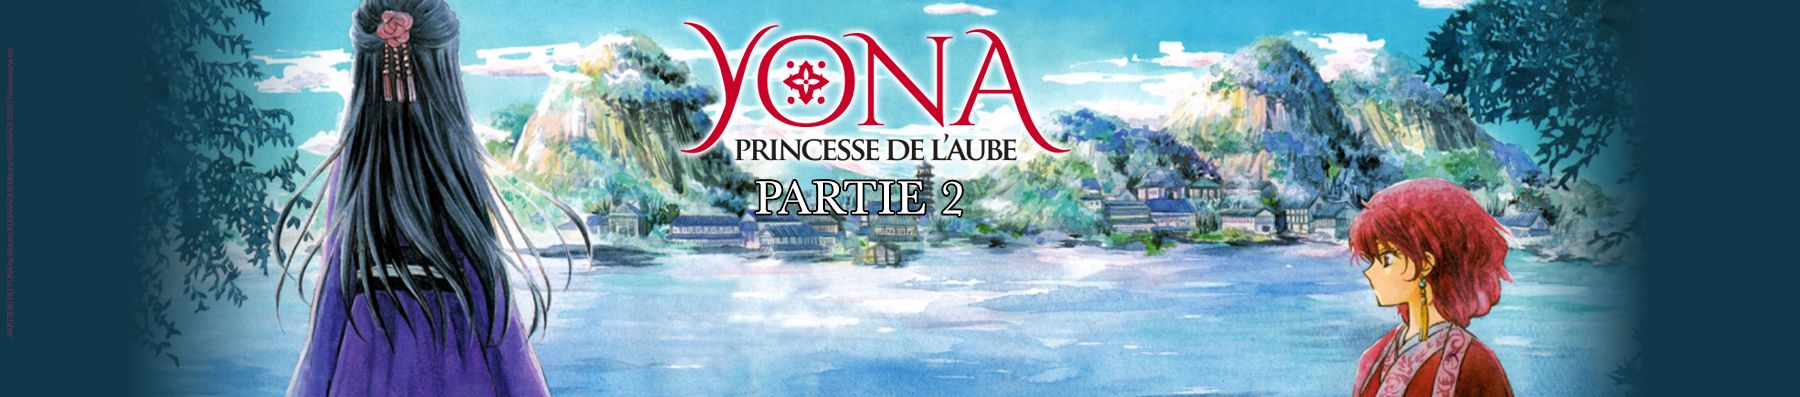 Dossier manga - Yona, Princesse de l'Aube - partie 2